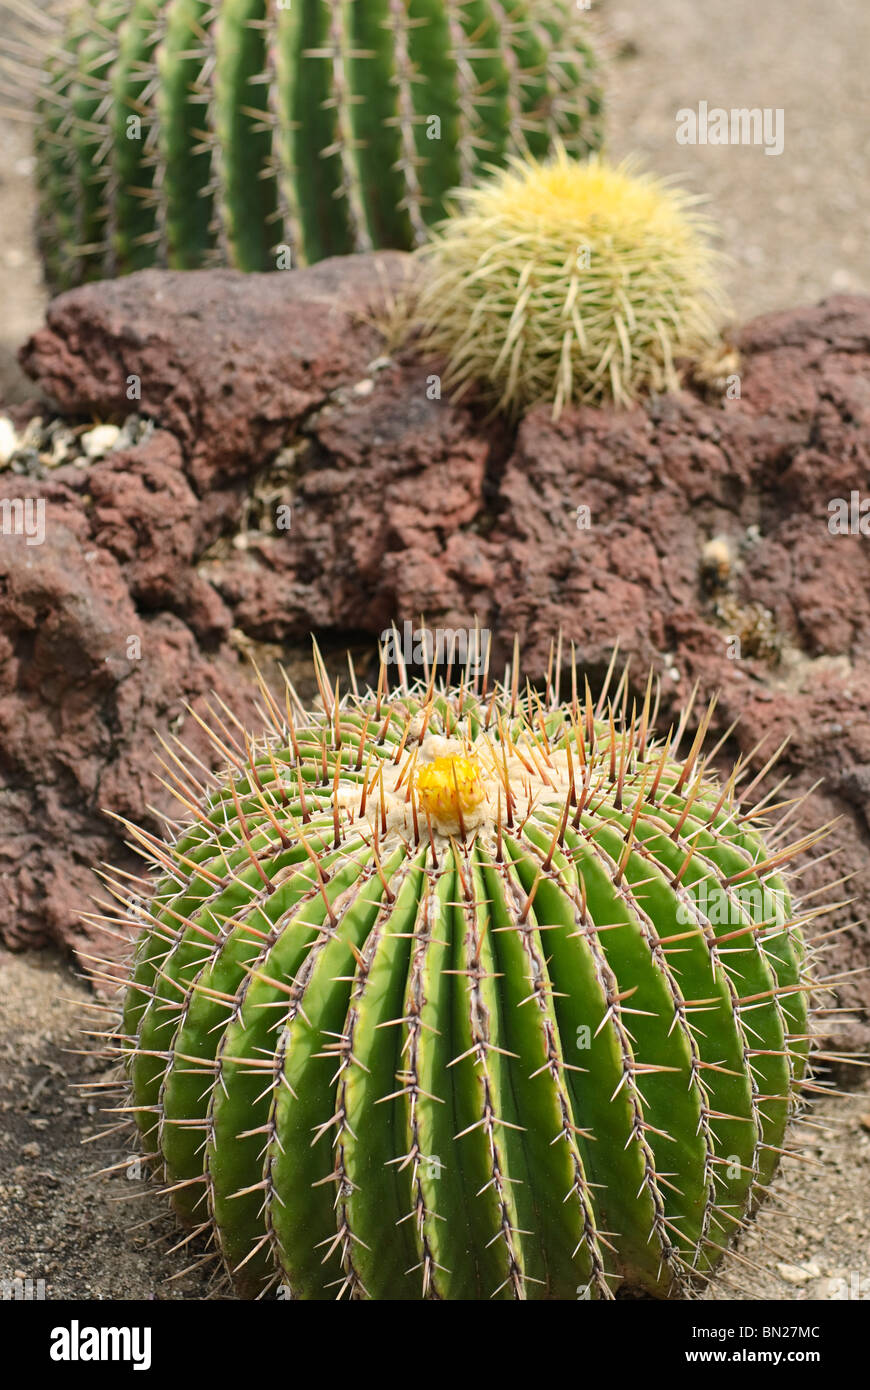 Echinocactus ingens, or Visnaga cactus is a large barrel cactus. Stock Photo